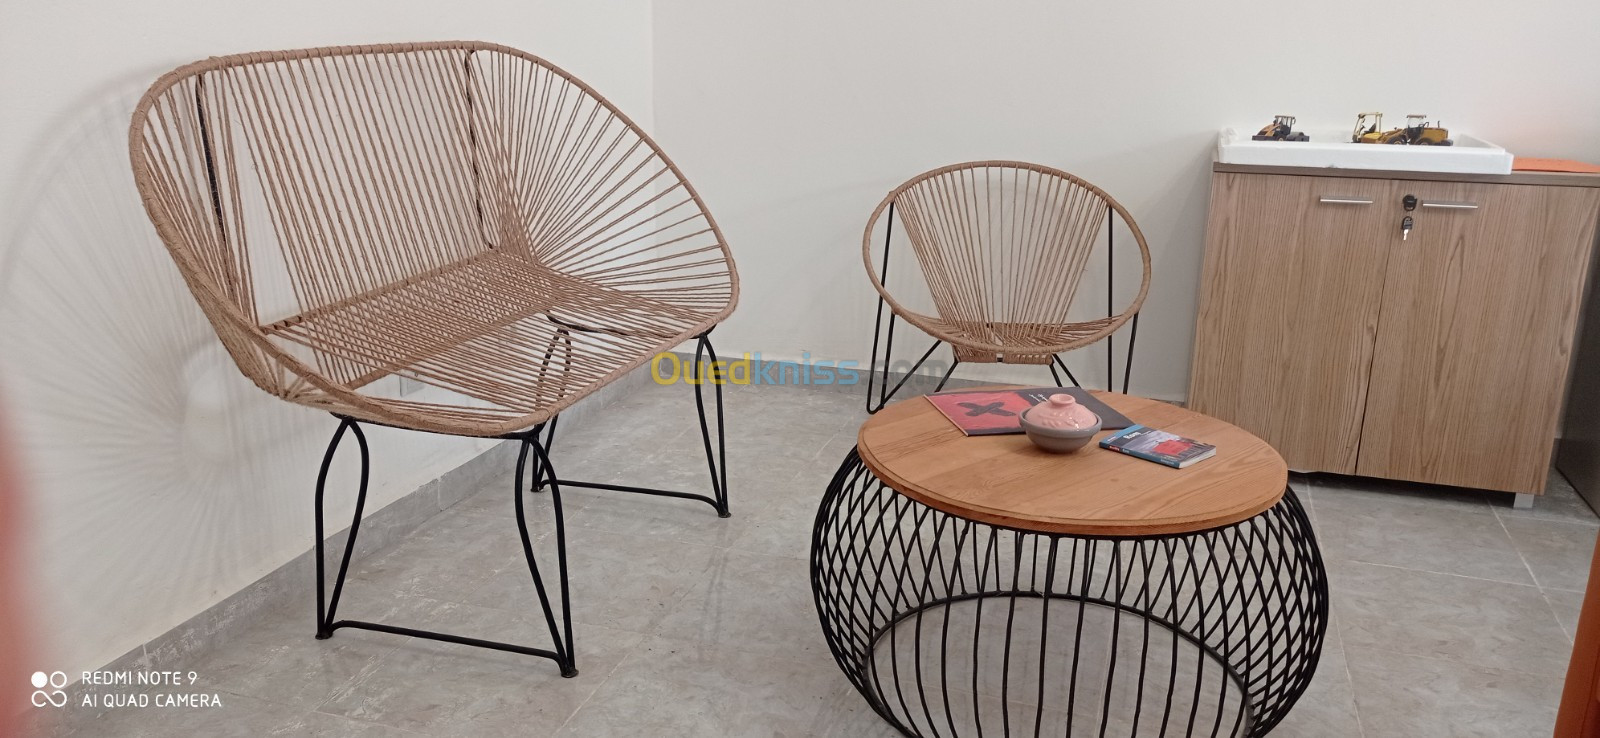 Ensembre de table et chaise original designed pour bureau et jardin